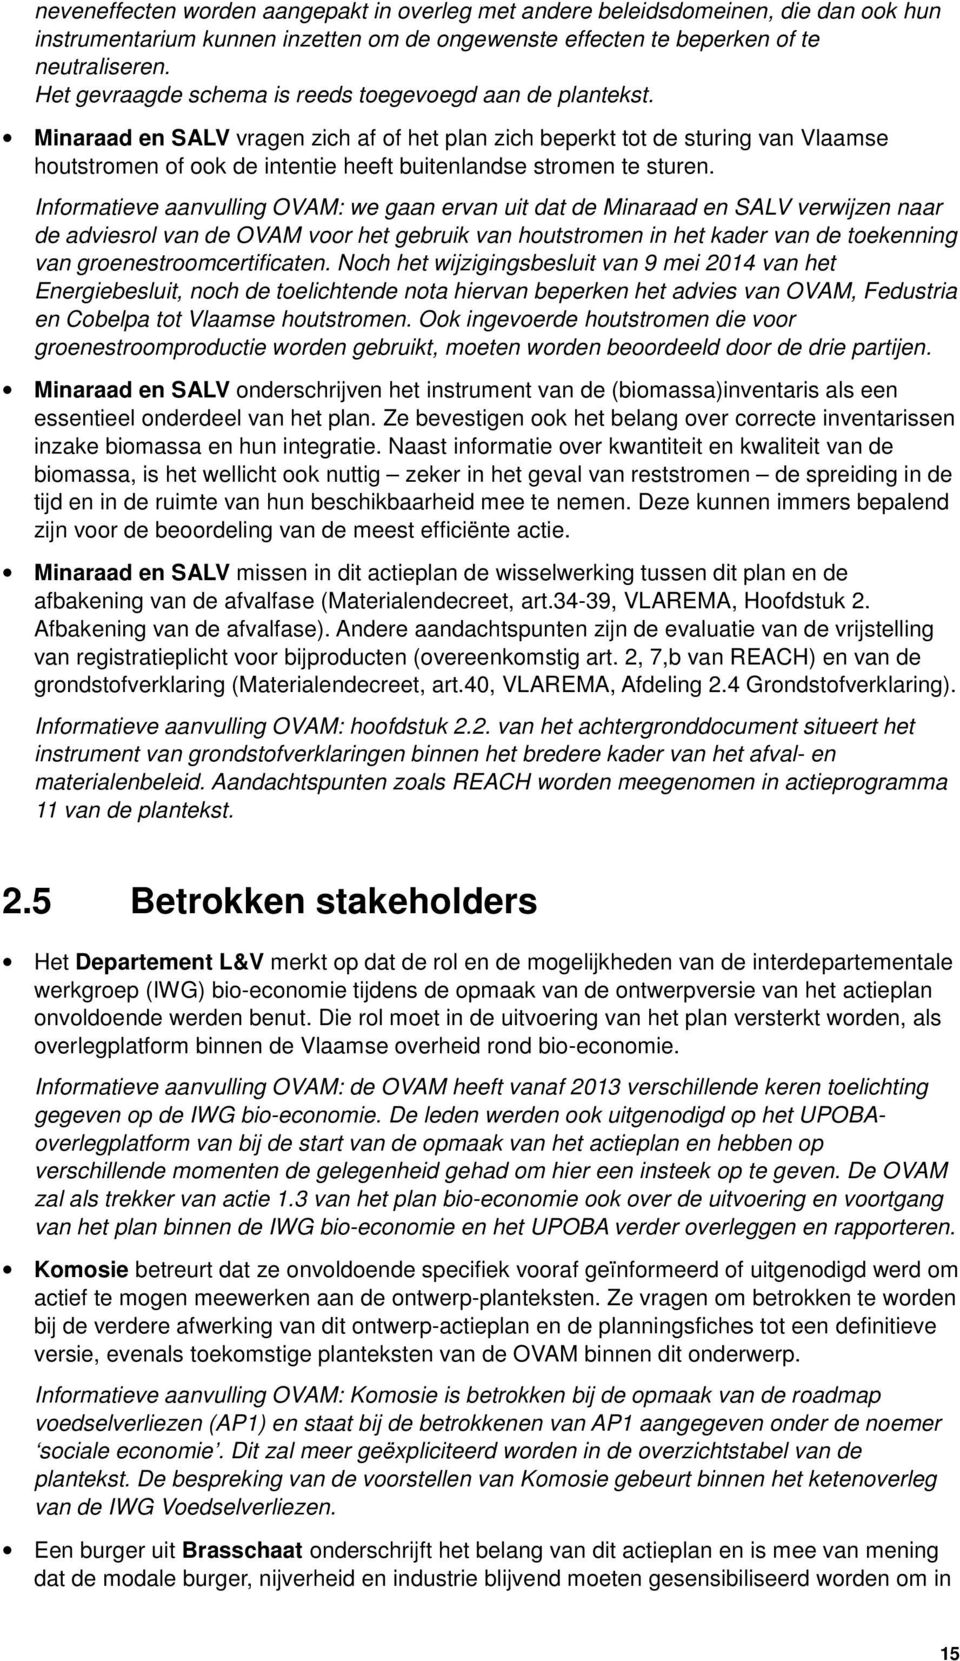 Minaraad en SALV vragen zich af of het plan zich beperkt tot de sturing van Vlaamse houtstromen of ook de intentie heeft buitenlandse stromen te sturen.